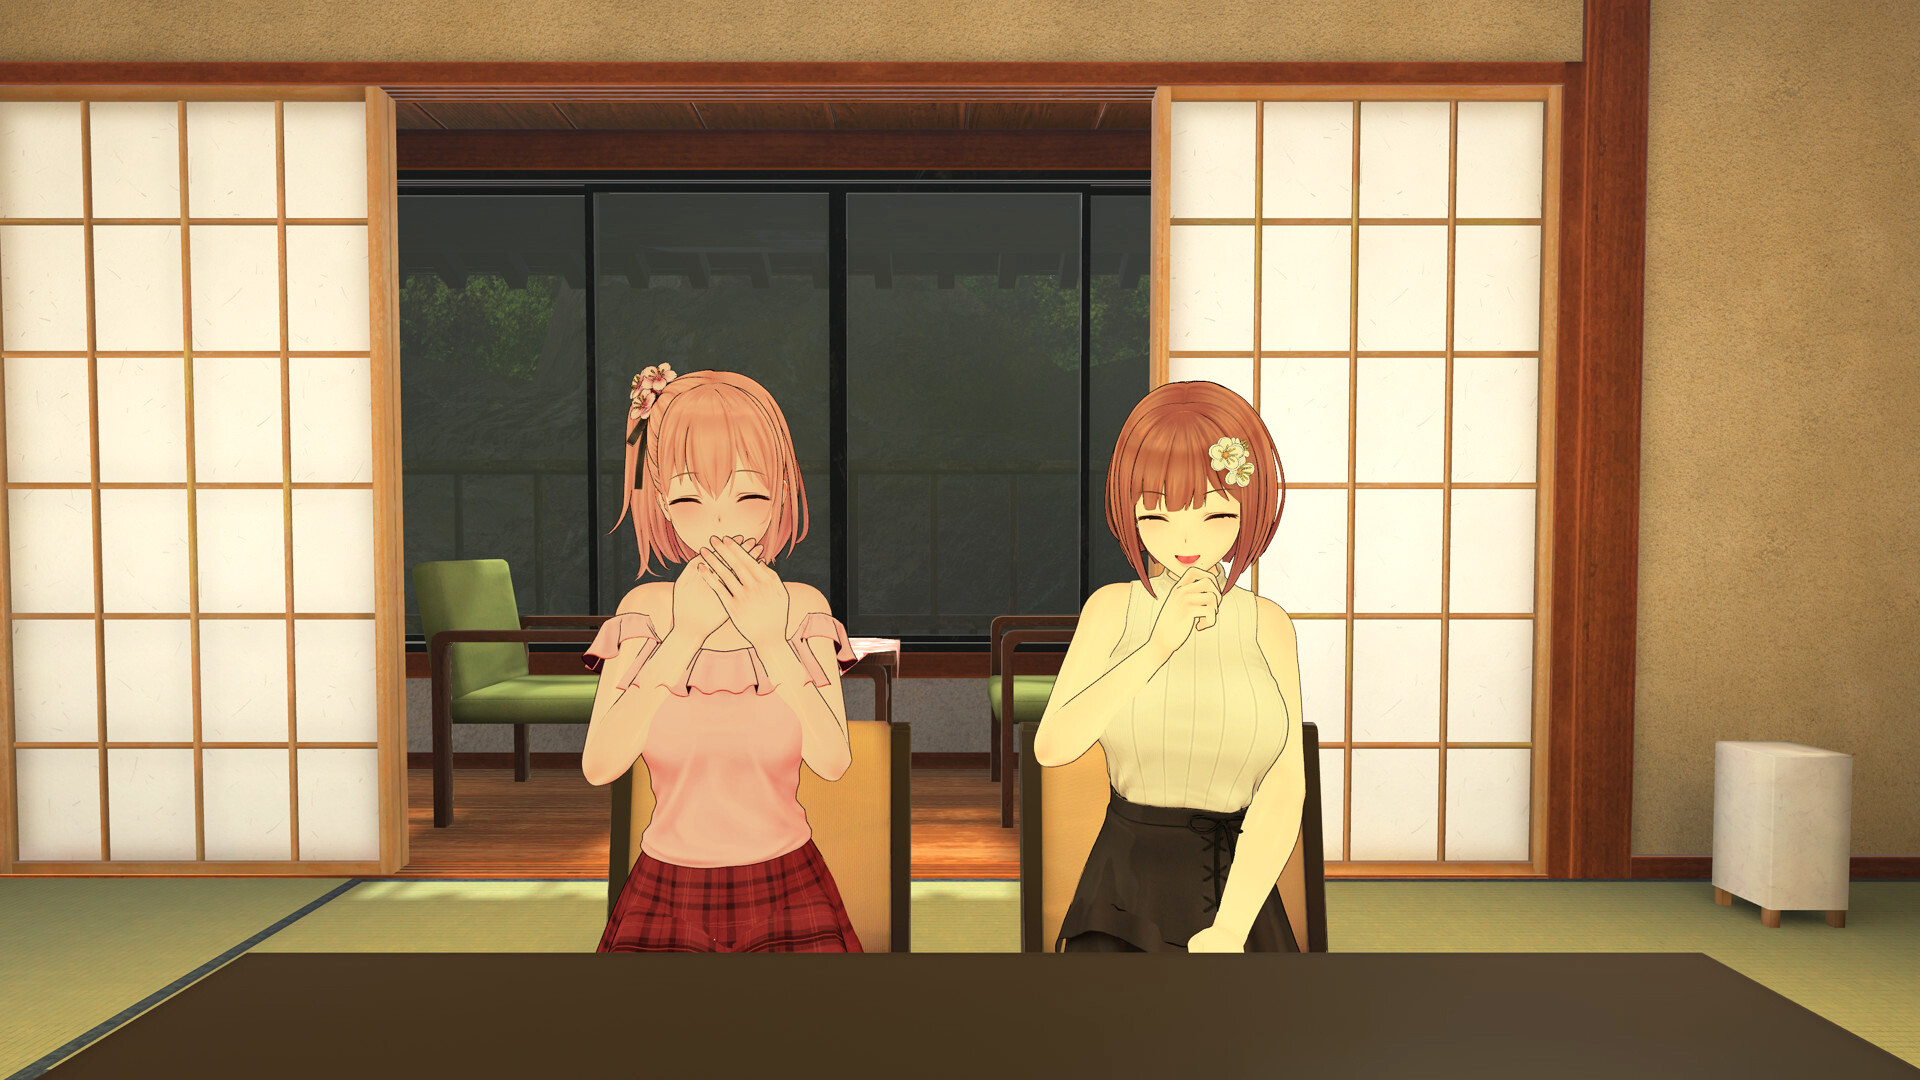 【DLC】Koi-Koi: Love Blossoms Non-VR Edition Featured Screenshot #1